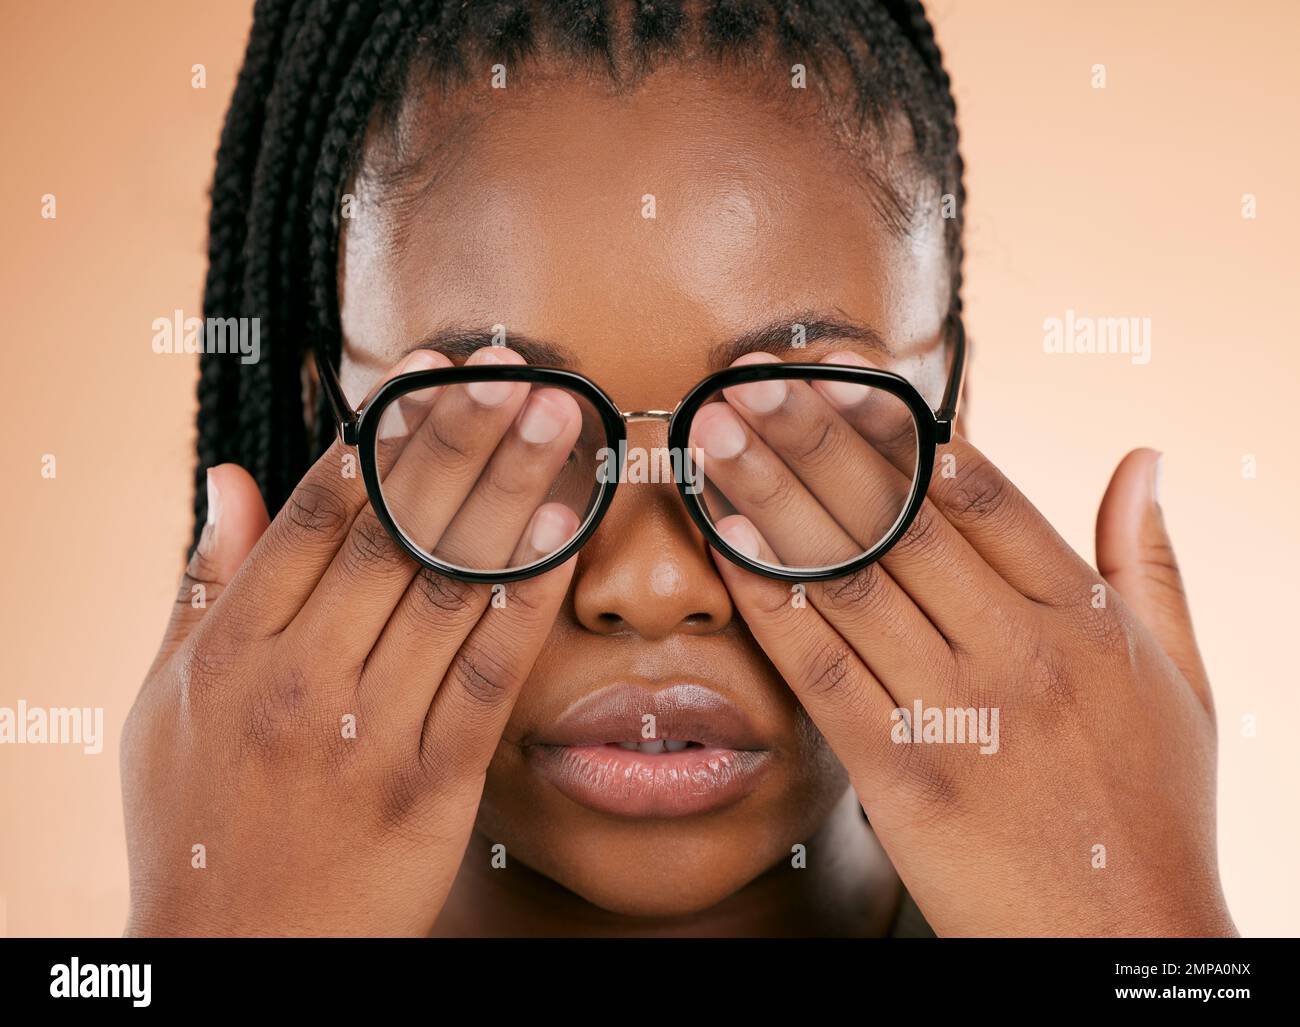 Mains, santé des yeux ou lunettes avec une femme noire en studio sur un fond beige couvrant son visage. Vision, aveugle et couverture avec une femme à l'intérieur de Banque D'Images